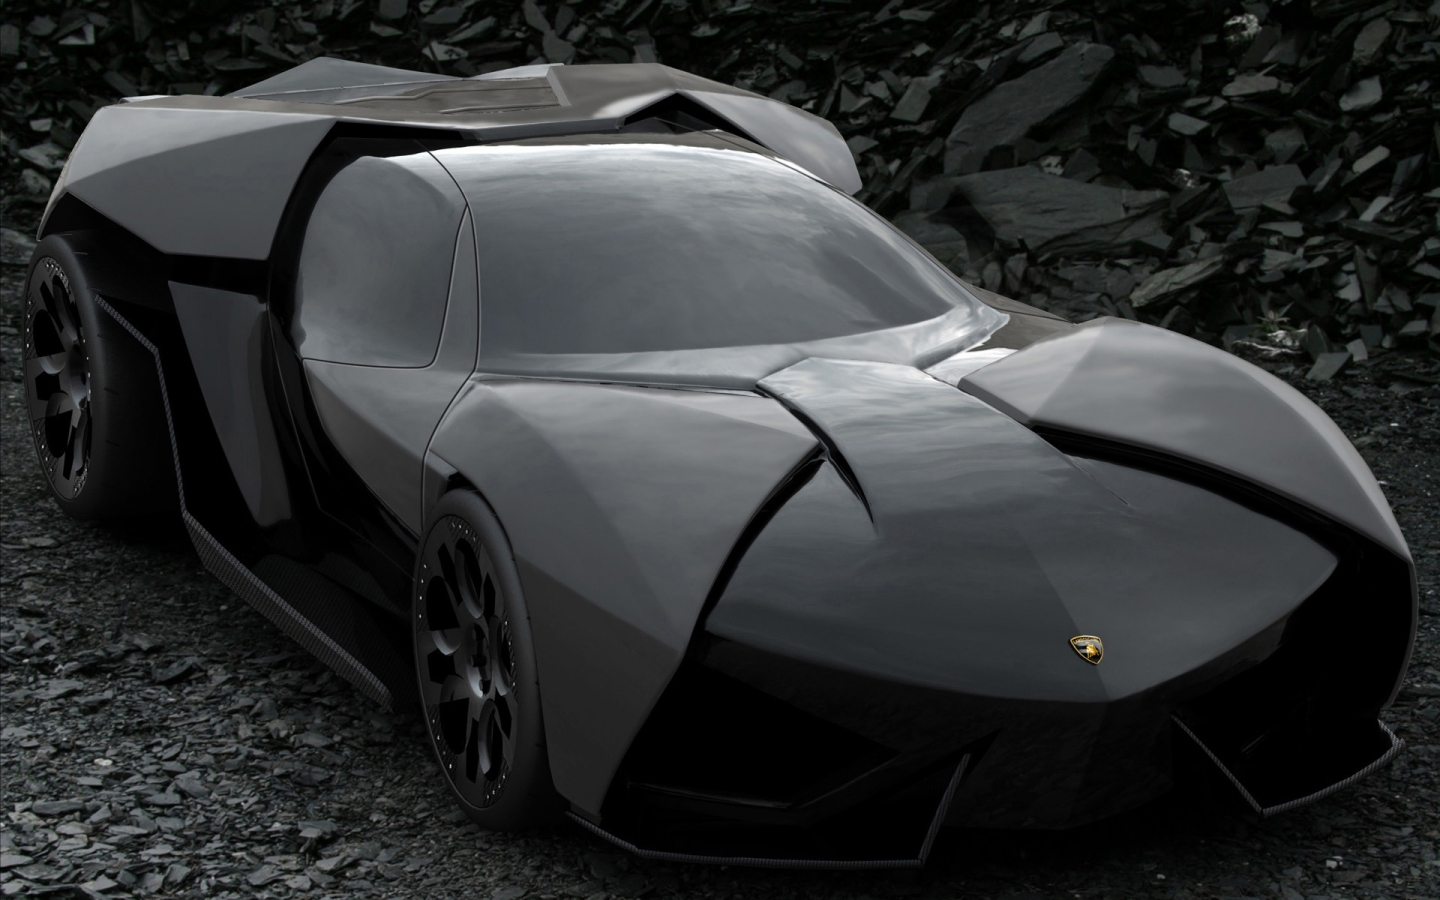 Lamborghini Ankonian Concept for 1440 x 900 widescreen resolution